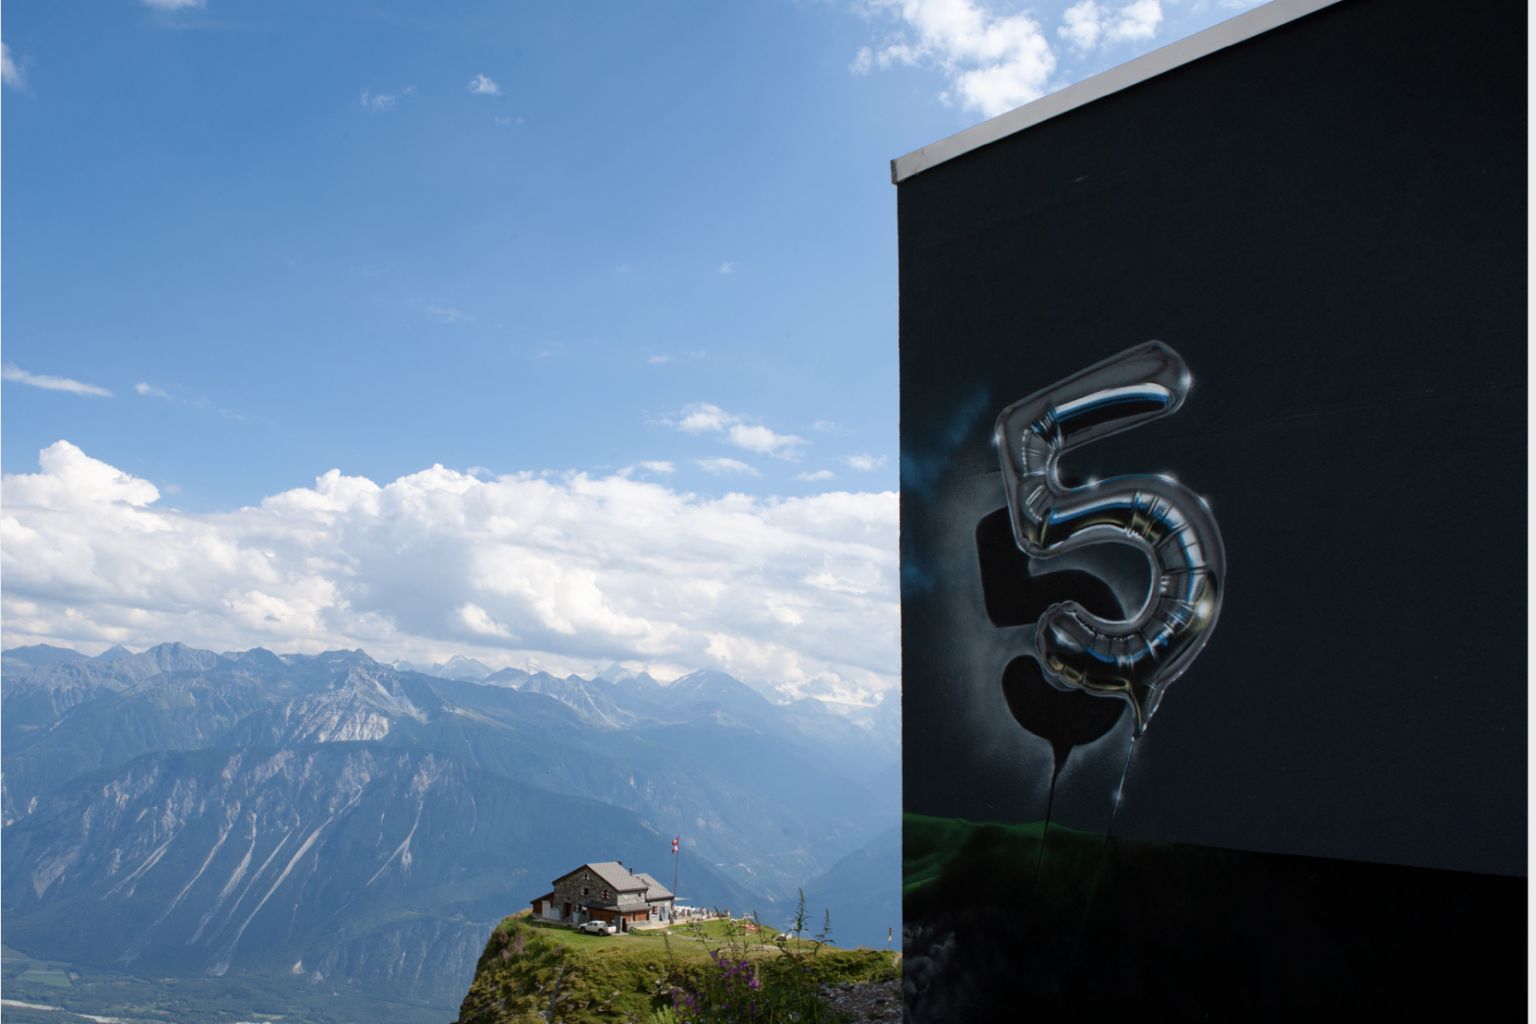 An den Fassaden der Gebäude aus den 1970er-Jahren und an den Skiliftanlagen 34 Werke von nationalen und internationalen Kunstschaffenden zu bewundern gibt, Wallis, Schweiz